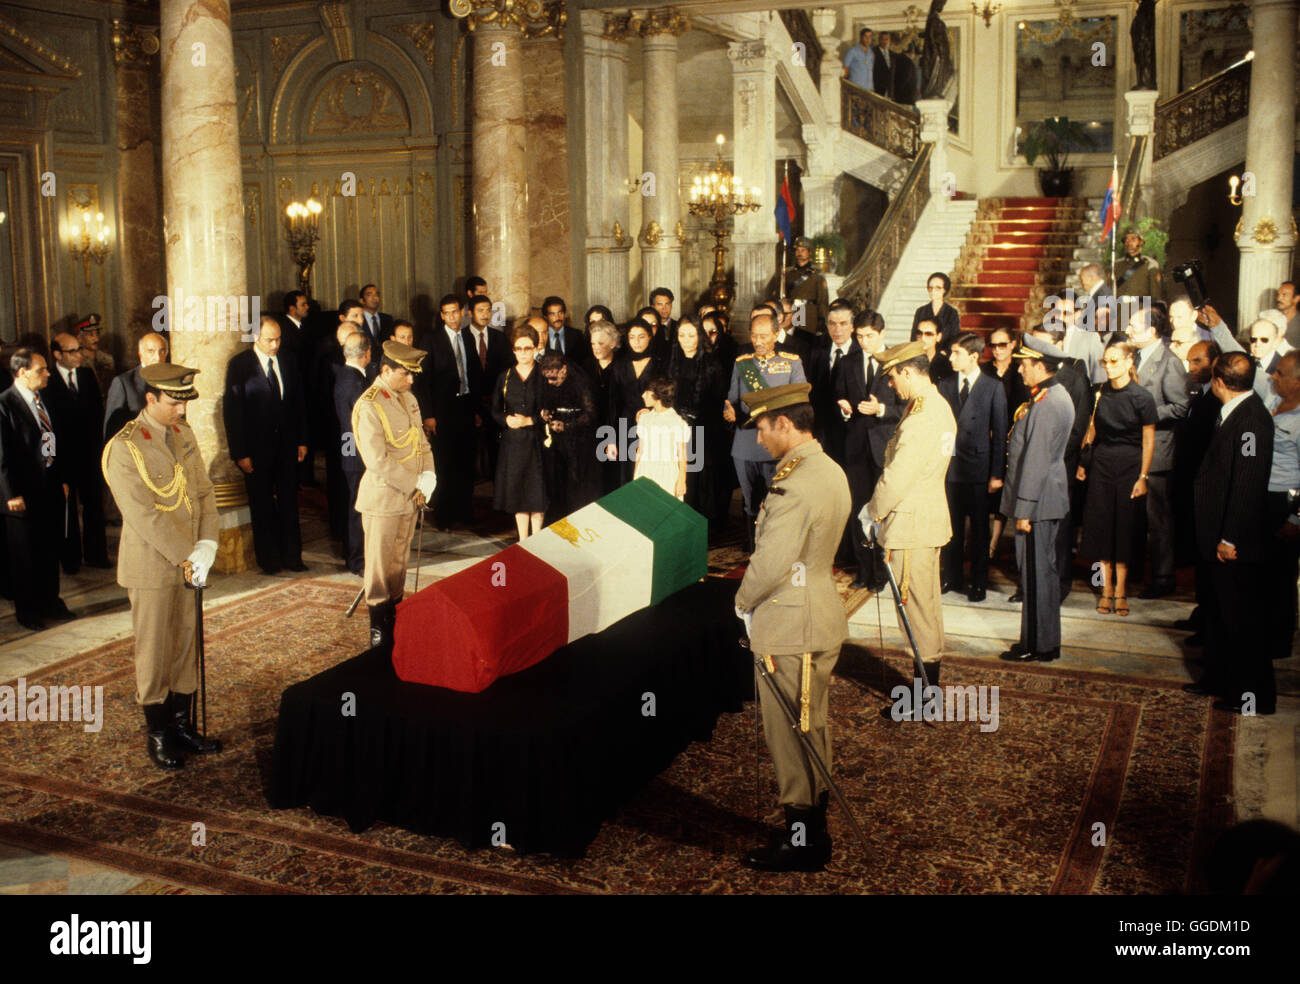 Scià dell'Iran il suo funerale di stato al Cairo in Egitto. Mohammad Reza Pahlavi, noto anche come Mohammad Reza Shah. Lo Shah, la vedova e la famiglia e Presidente Sadat 1980. La giacente in stato presso il Palazzo Abdin. HOMER SYKES Foto Stock